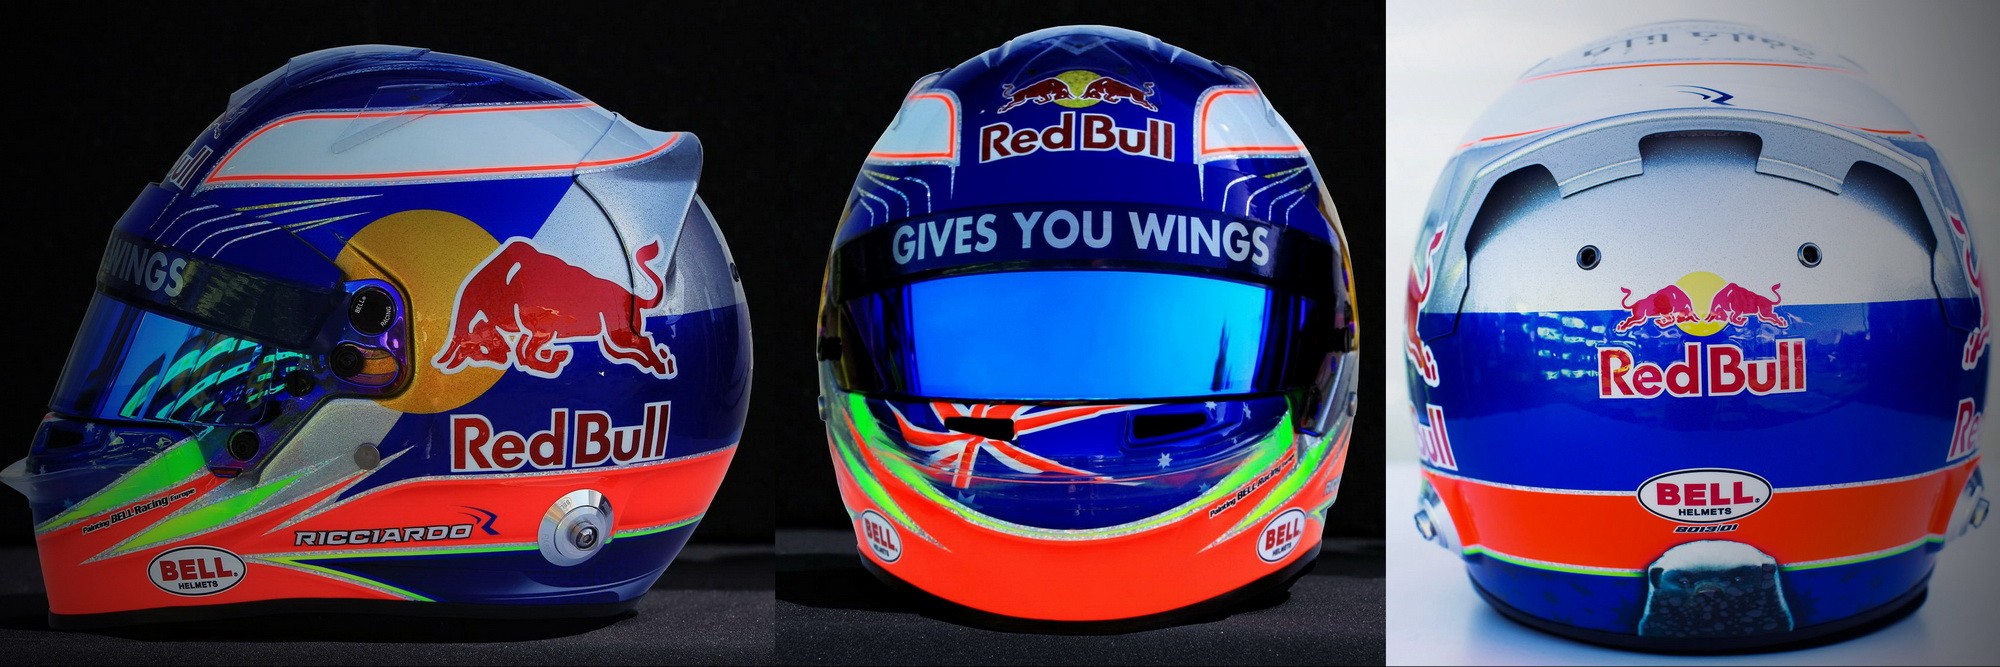 Шлем Даниэля Риккьярдо на сезон 2013 года | 2013 helmet of Daniel Ricciardo